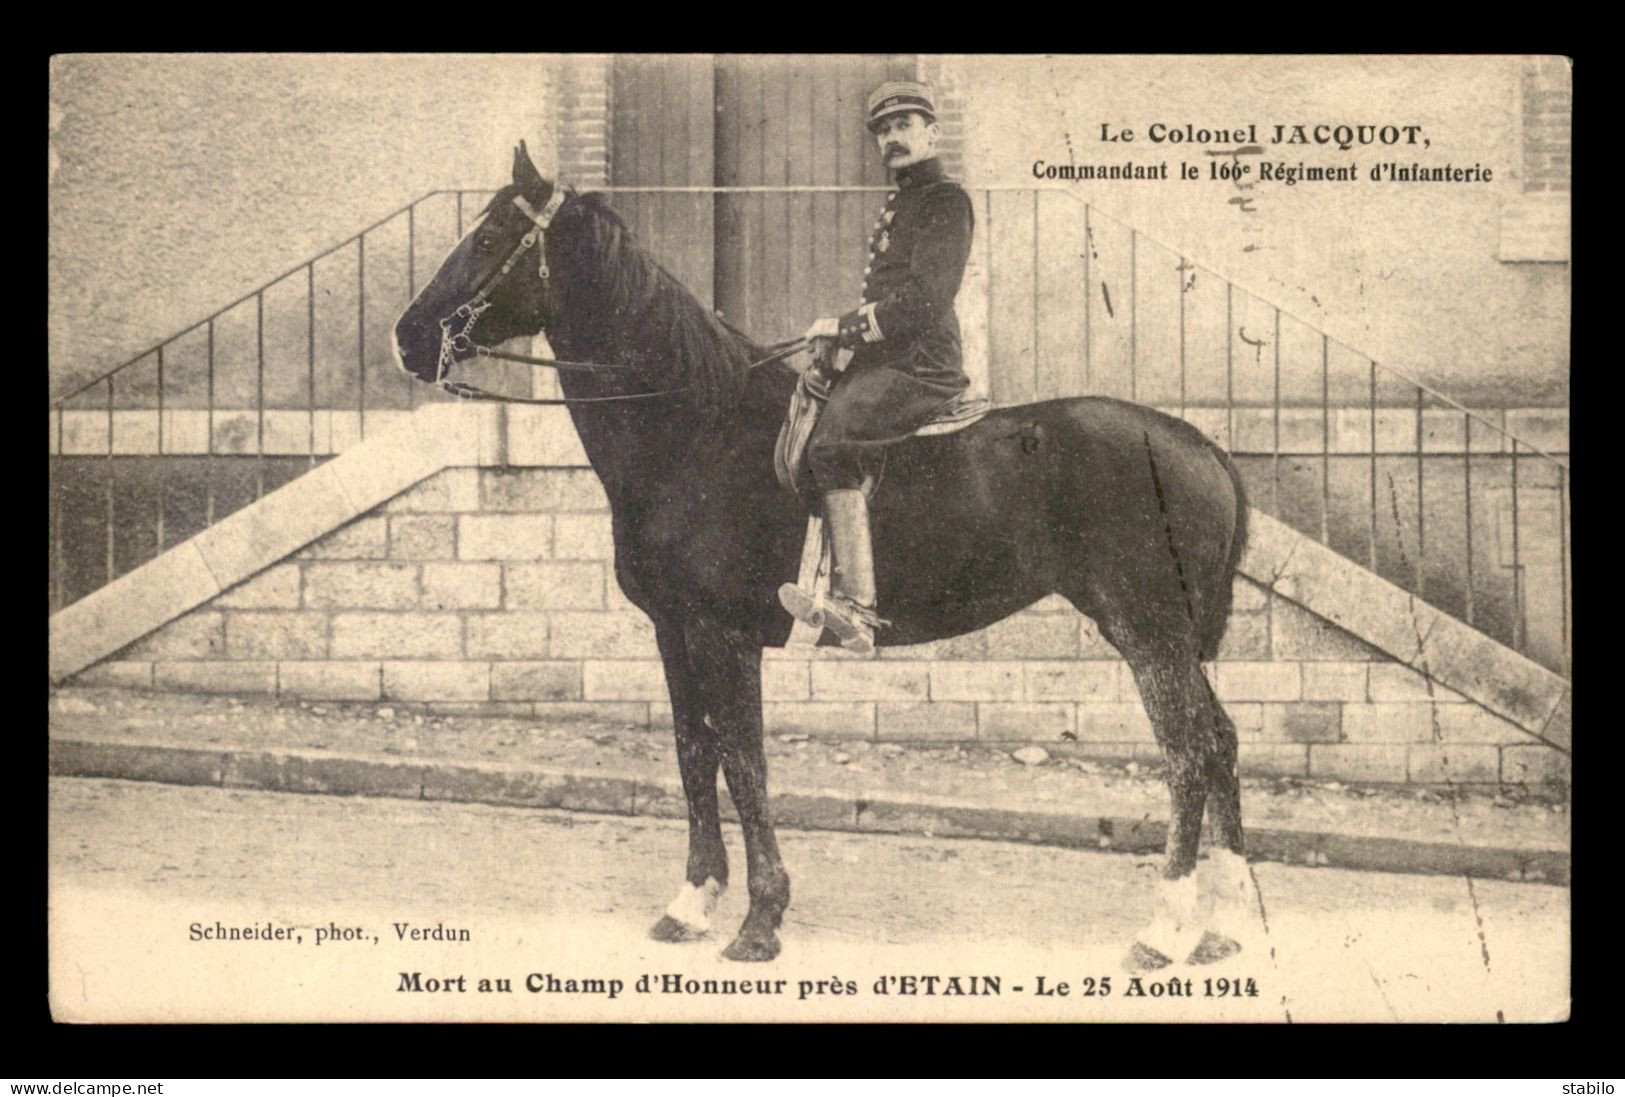 55 - ETAIN - LE COLONEL JACQUOT, COMMANDANT LE 166E R.I. MORT AU CHAMP D'HONNEUR LE 25 AOUT 1914 - GUERRE 14/18 - Etain